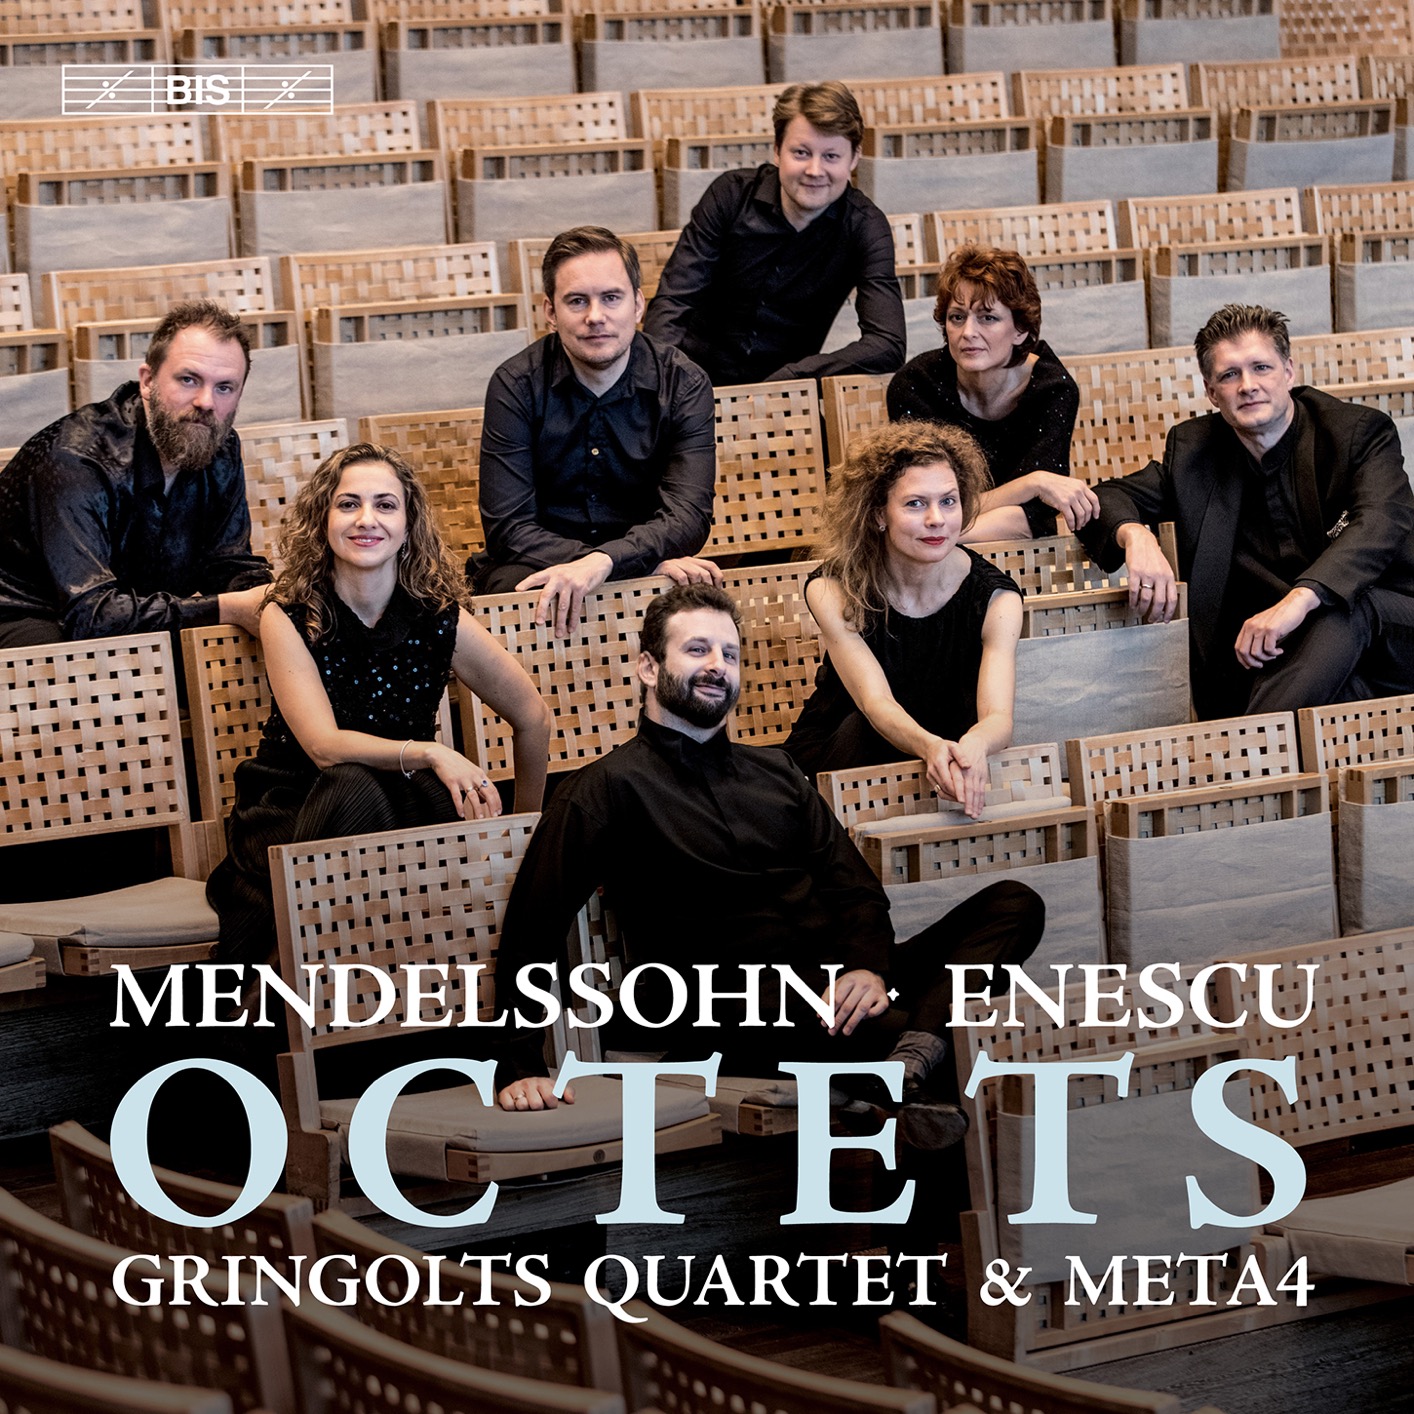 Gringolts Quartet & Meta4 – Mendelssohn & Enescu: Octets (2020) [FLAC 24bit/96kHz]